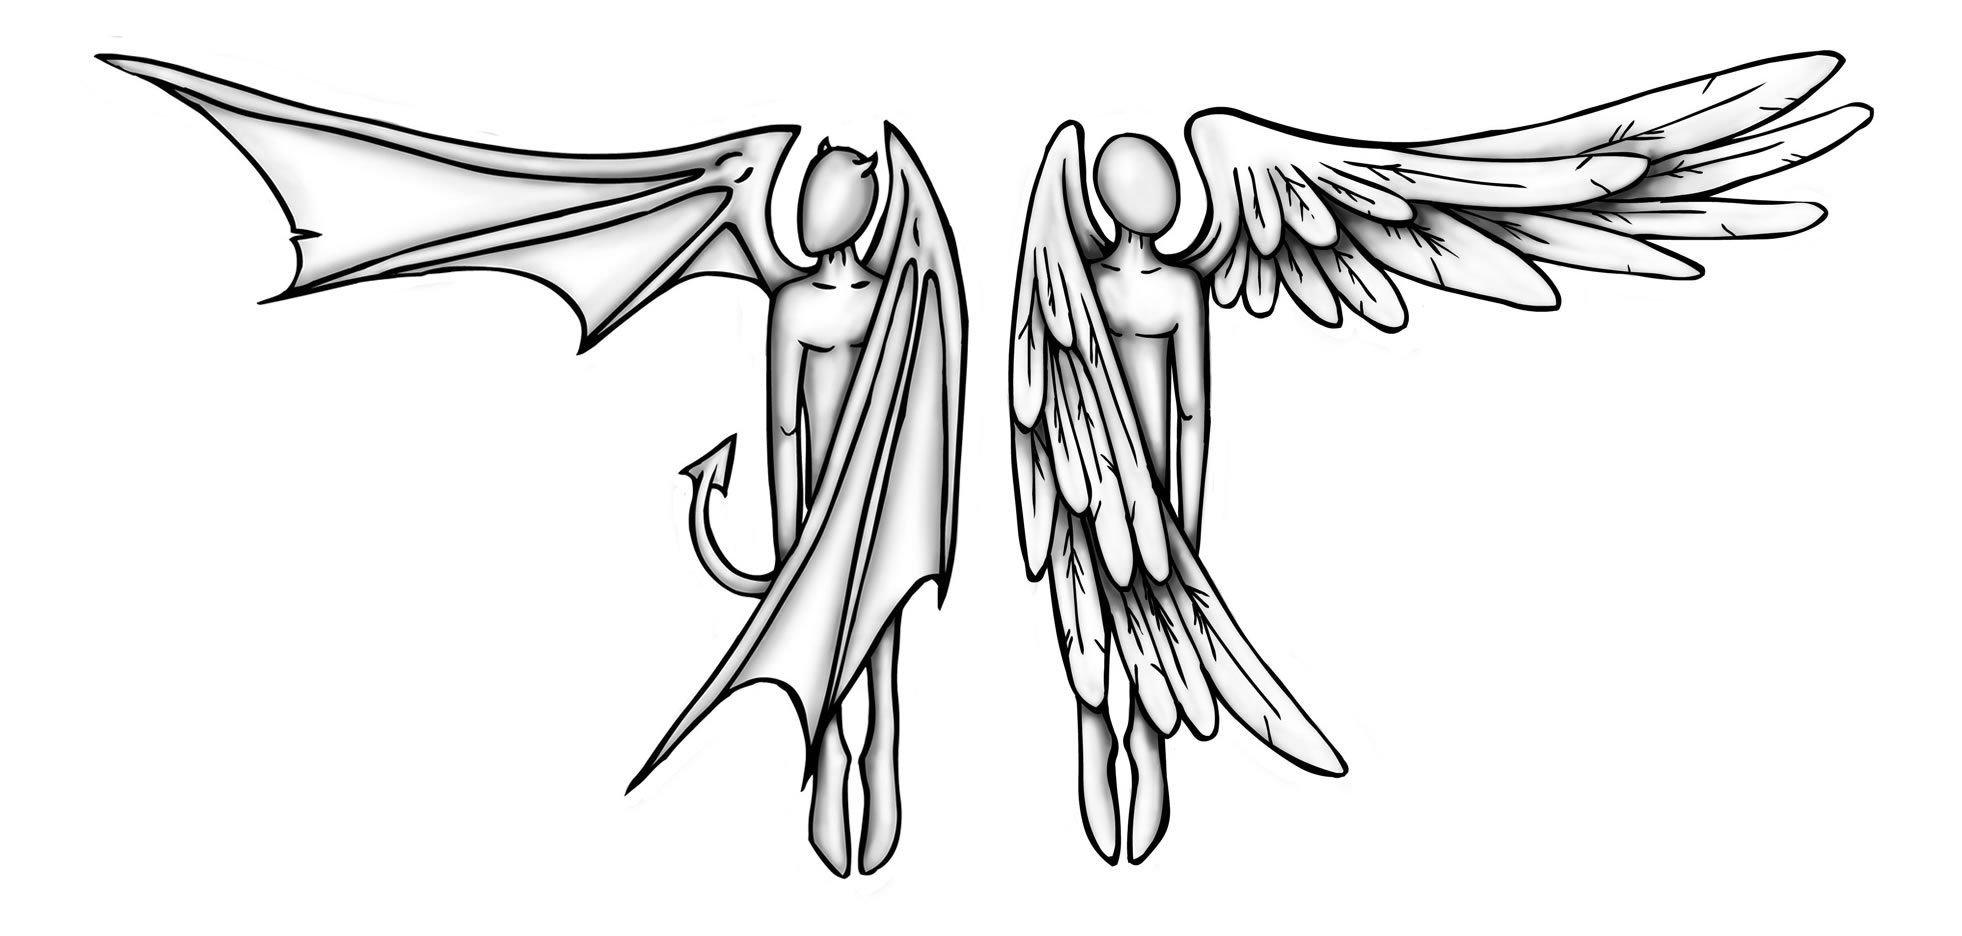 Angel and devil cherub tattoo